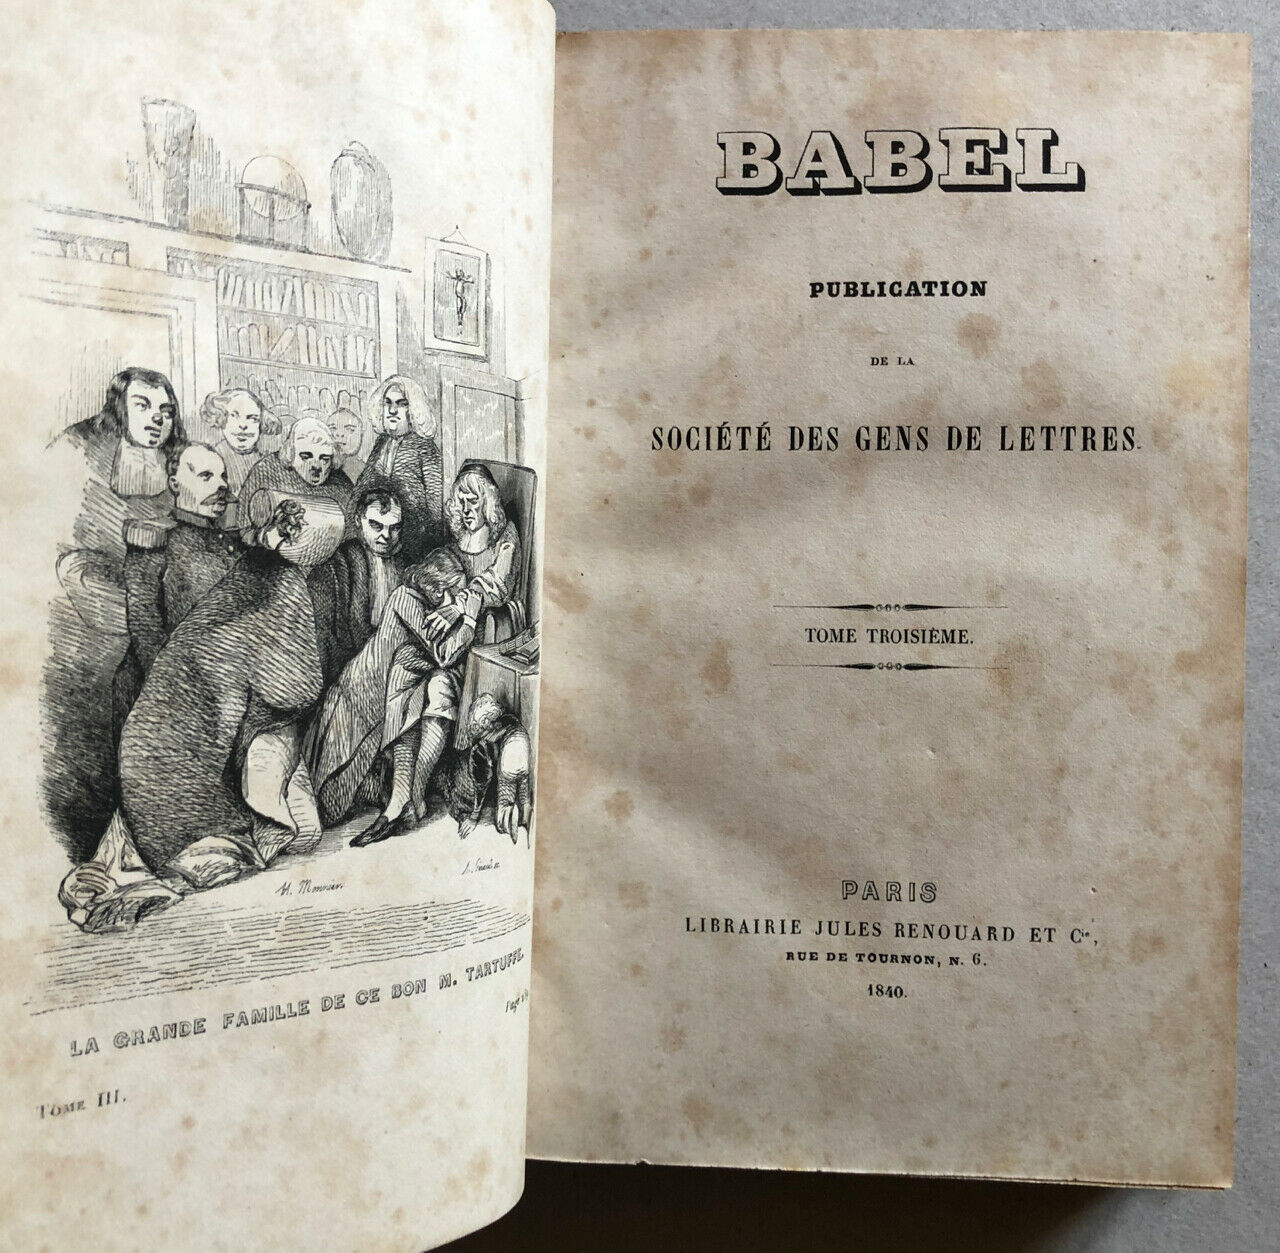 Balzac, Dumas, Méry … — Babel — recueil de nouvelles — É.O. — Renouard — 1840.